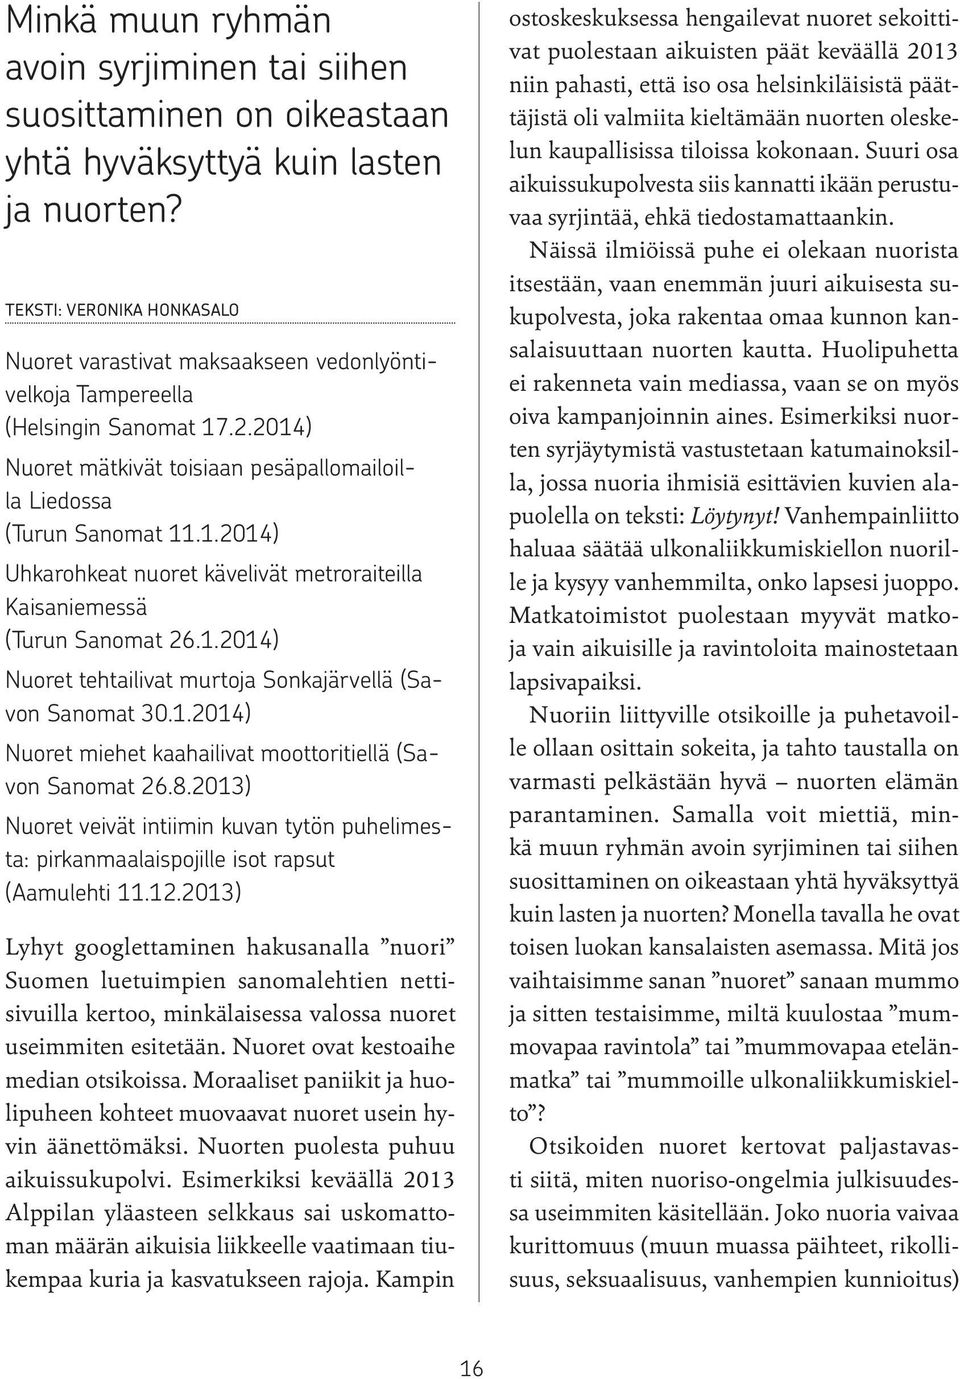 1.2014) Nuoret tehtailivat murtoja Sonkajärvellä (Savon Sanomat 30.1.2014) Nuoret miehet kaahailivat moottoritiellä (Savon Sanomat 26.8.